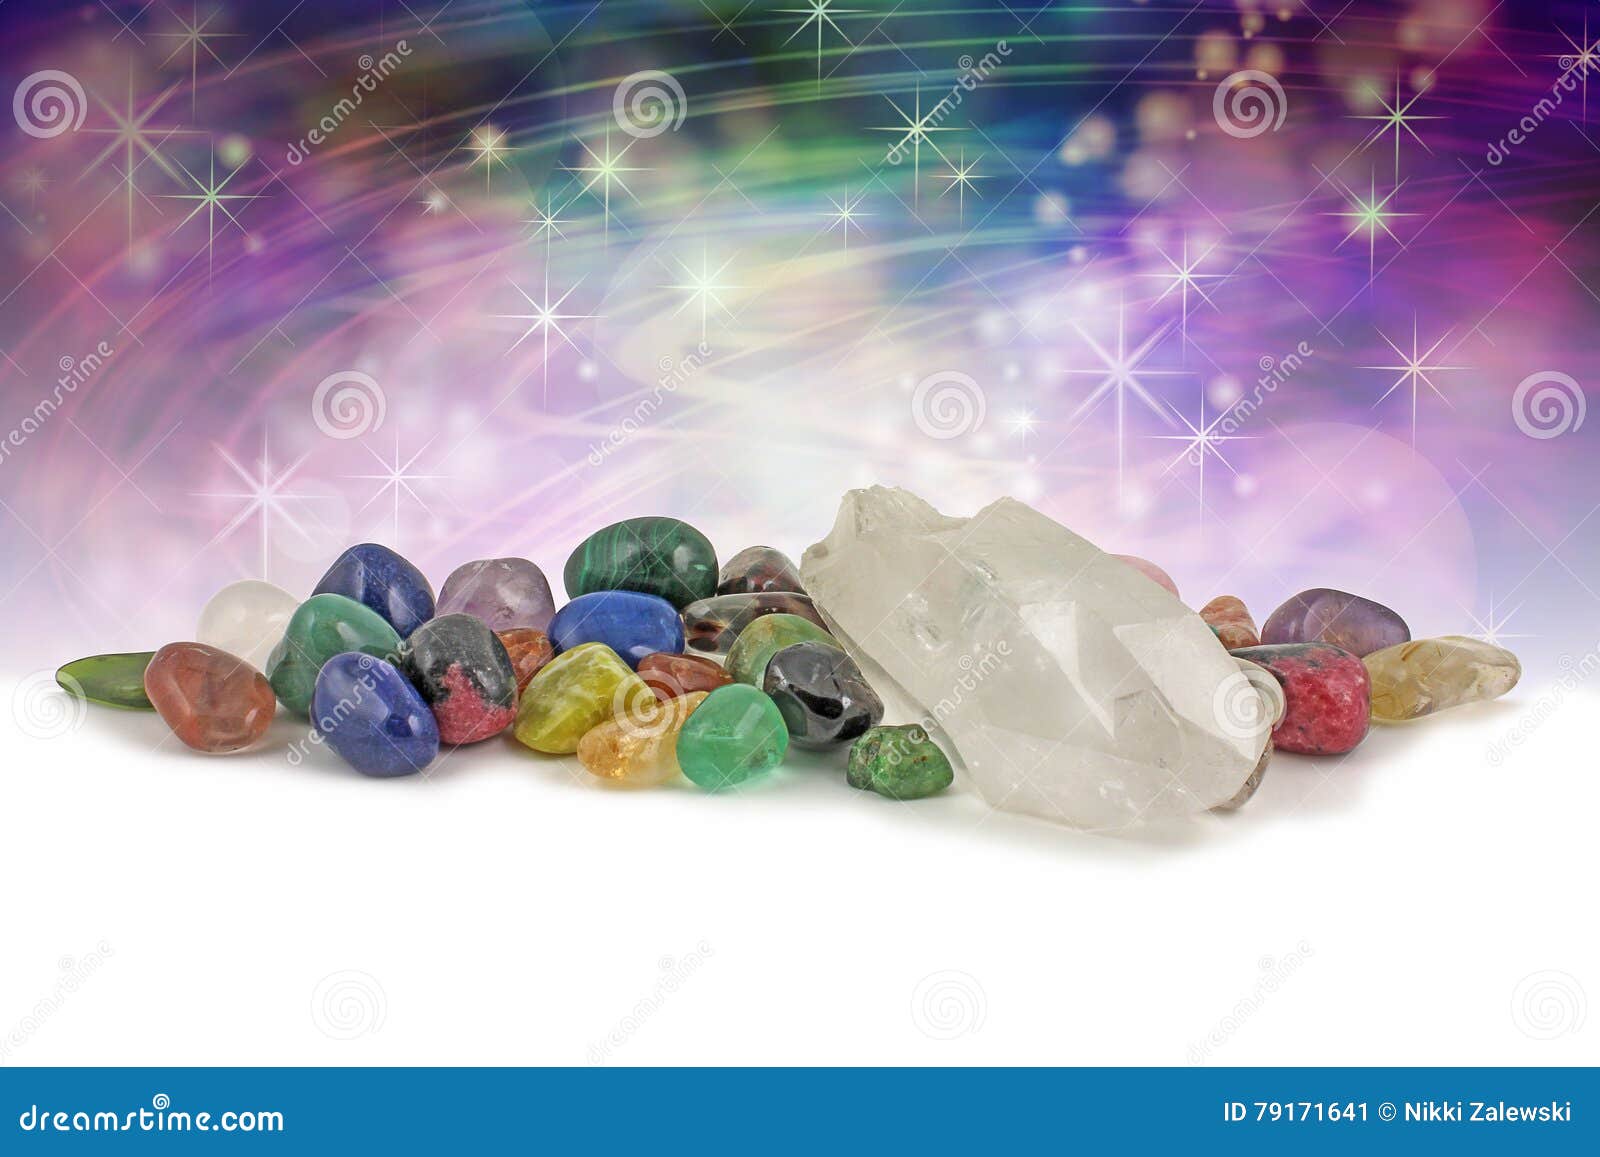 magical healing crystals